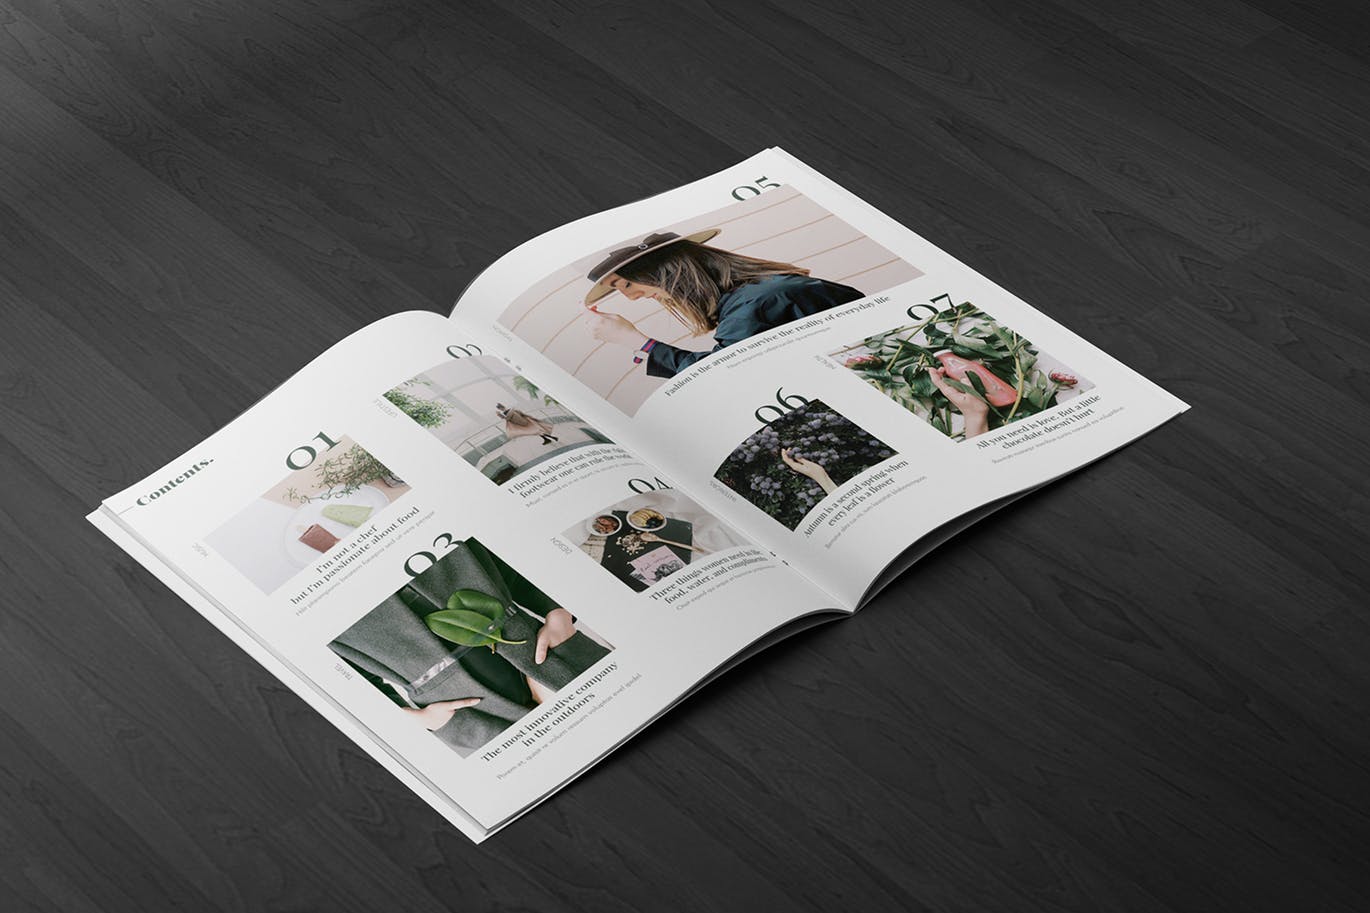 A4宣传小册子/企业画册内页版式设计45度角视图样机第一素材精选A4 